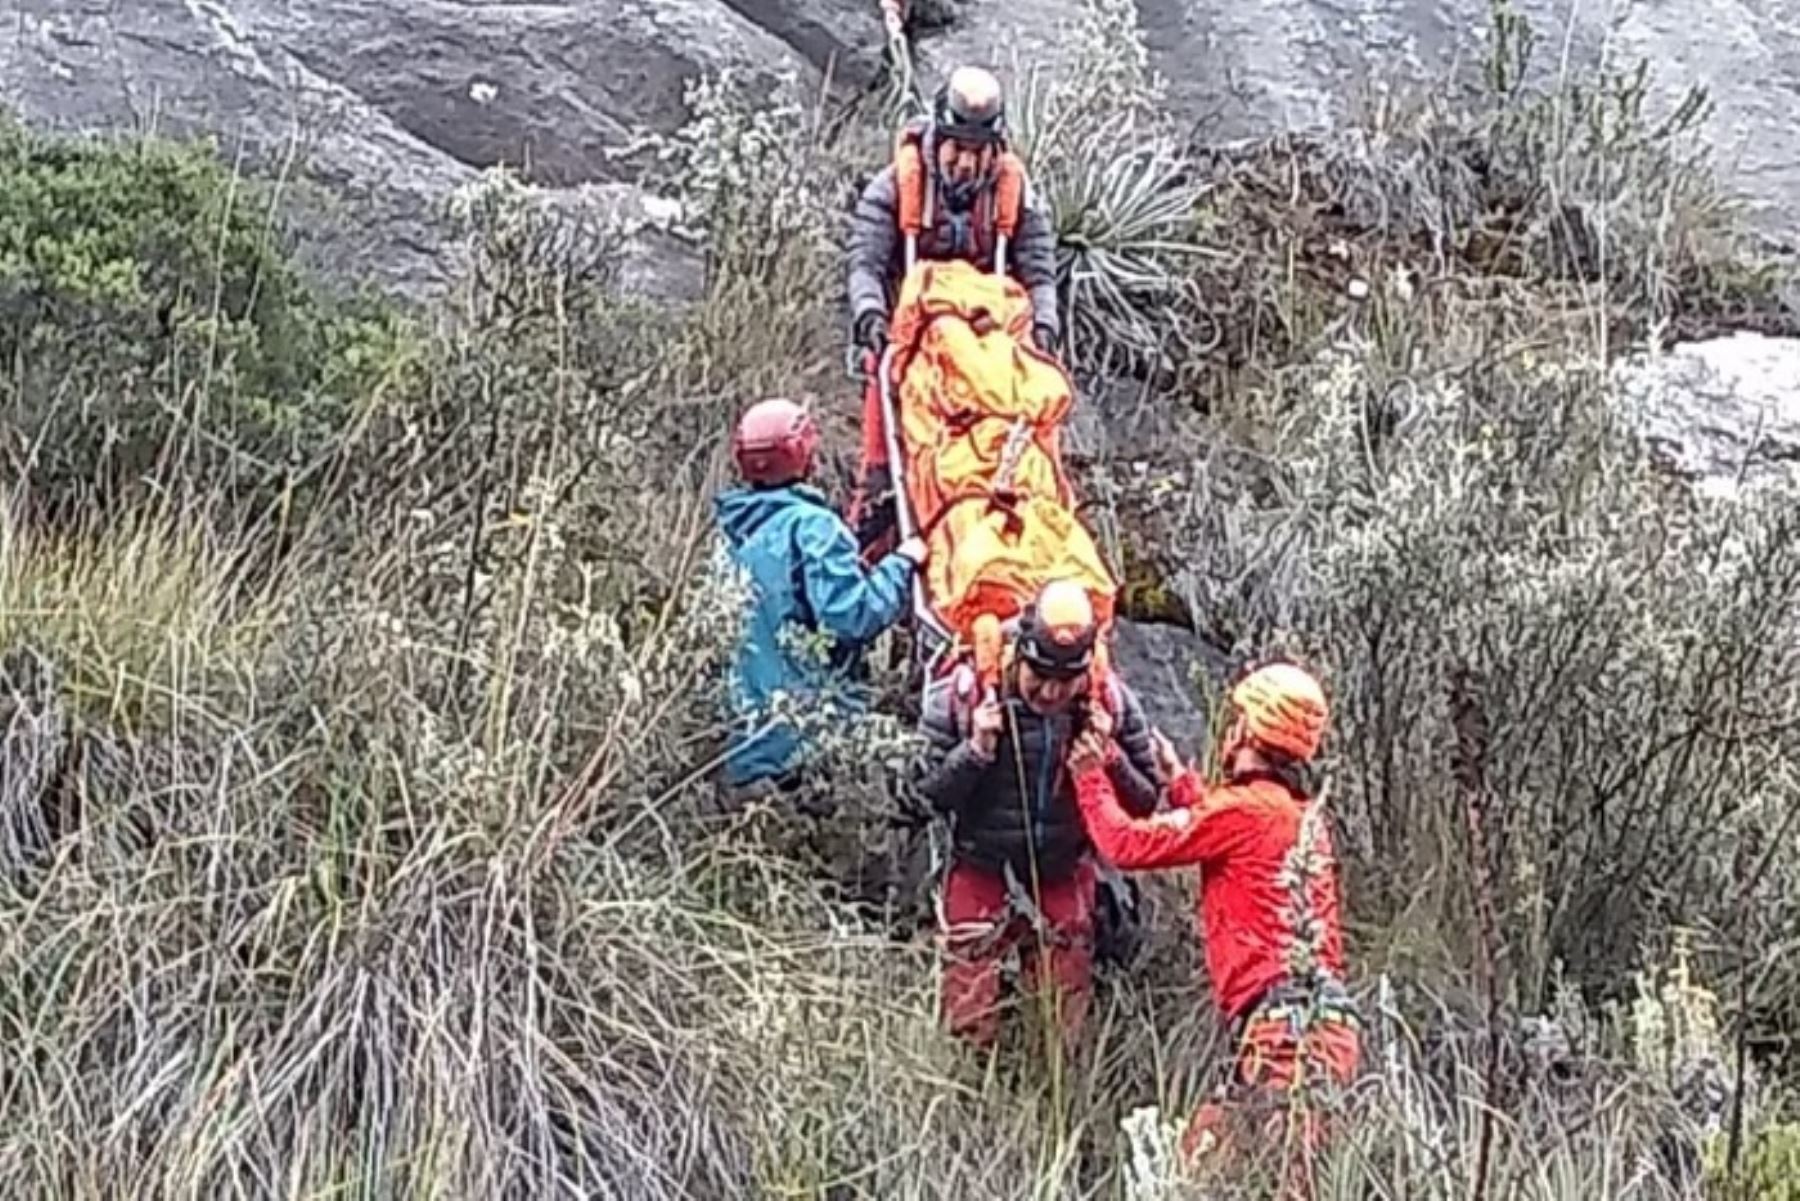 El cadáver de uno de los tres turistas franceses accidentados en el nevado de Quitaraju, en el distrito de Santa Cruz, provincia de Huaylas, región Áncash, fue hallado por el grupo de rescatistas asignados para la búsqueda y rescate, informó el Departamento de Salvamento de Alta Montaña de la Policía Nacional del Perú.ANDINA/Difusión